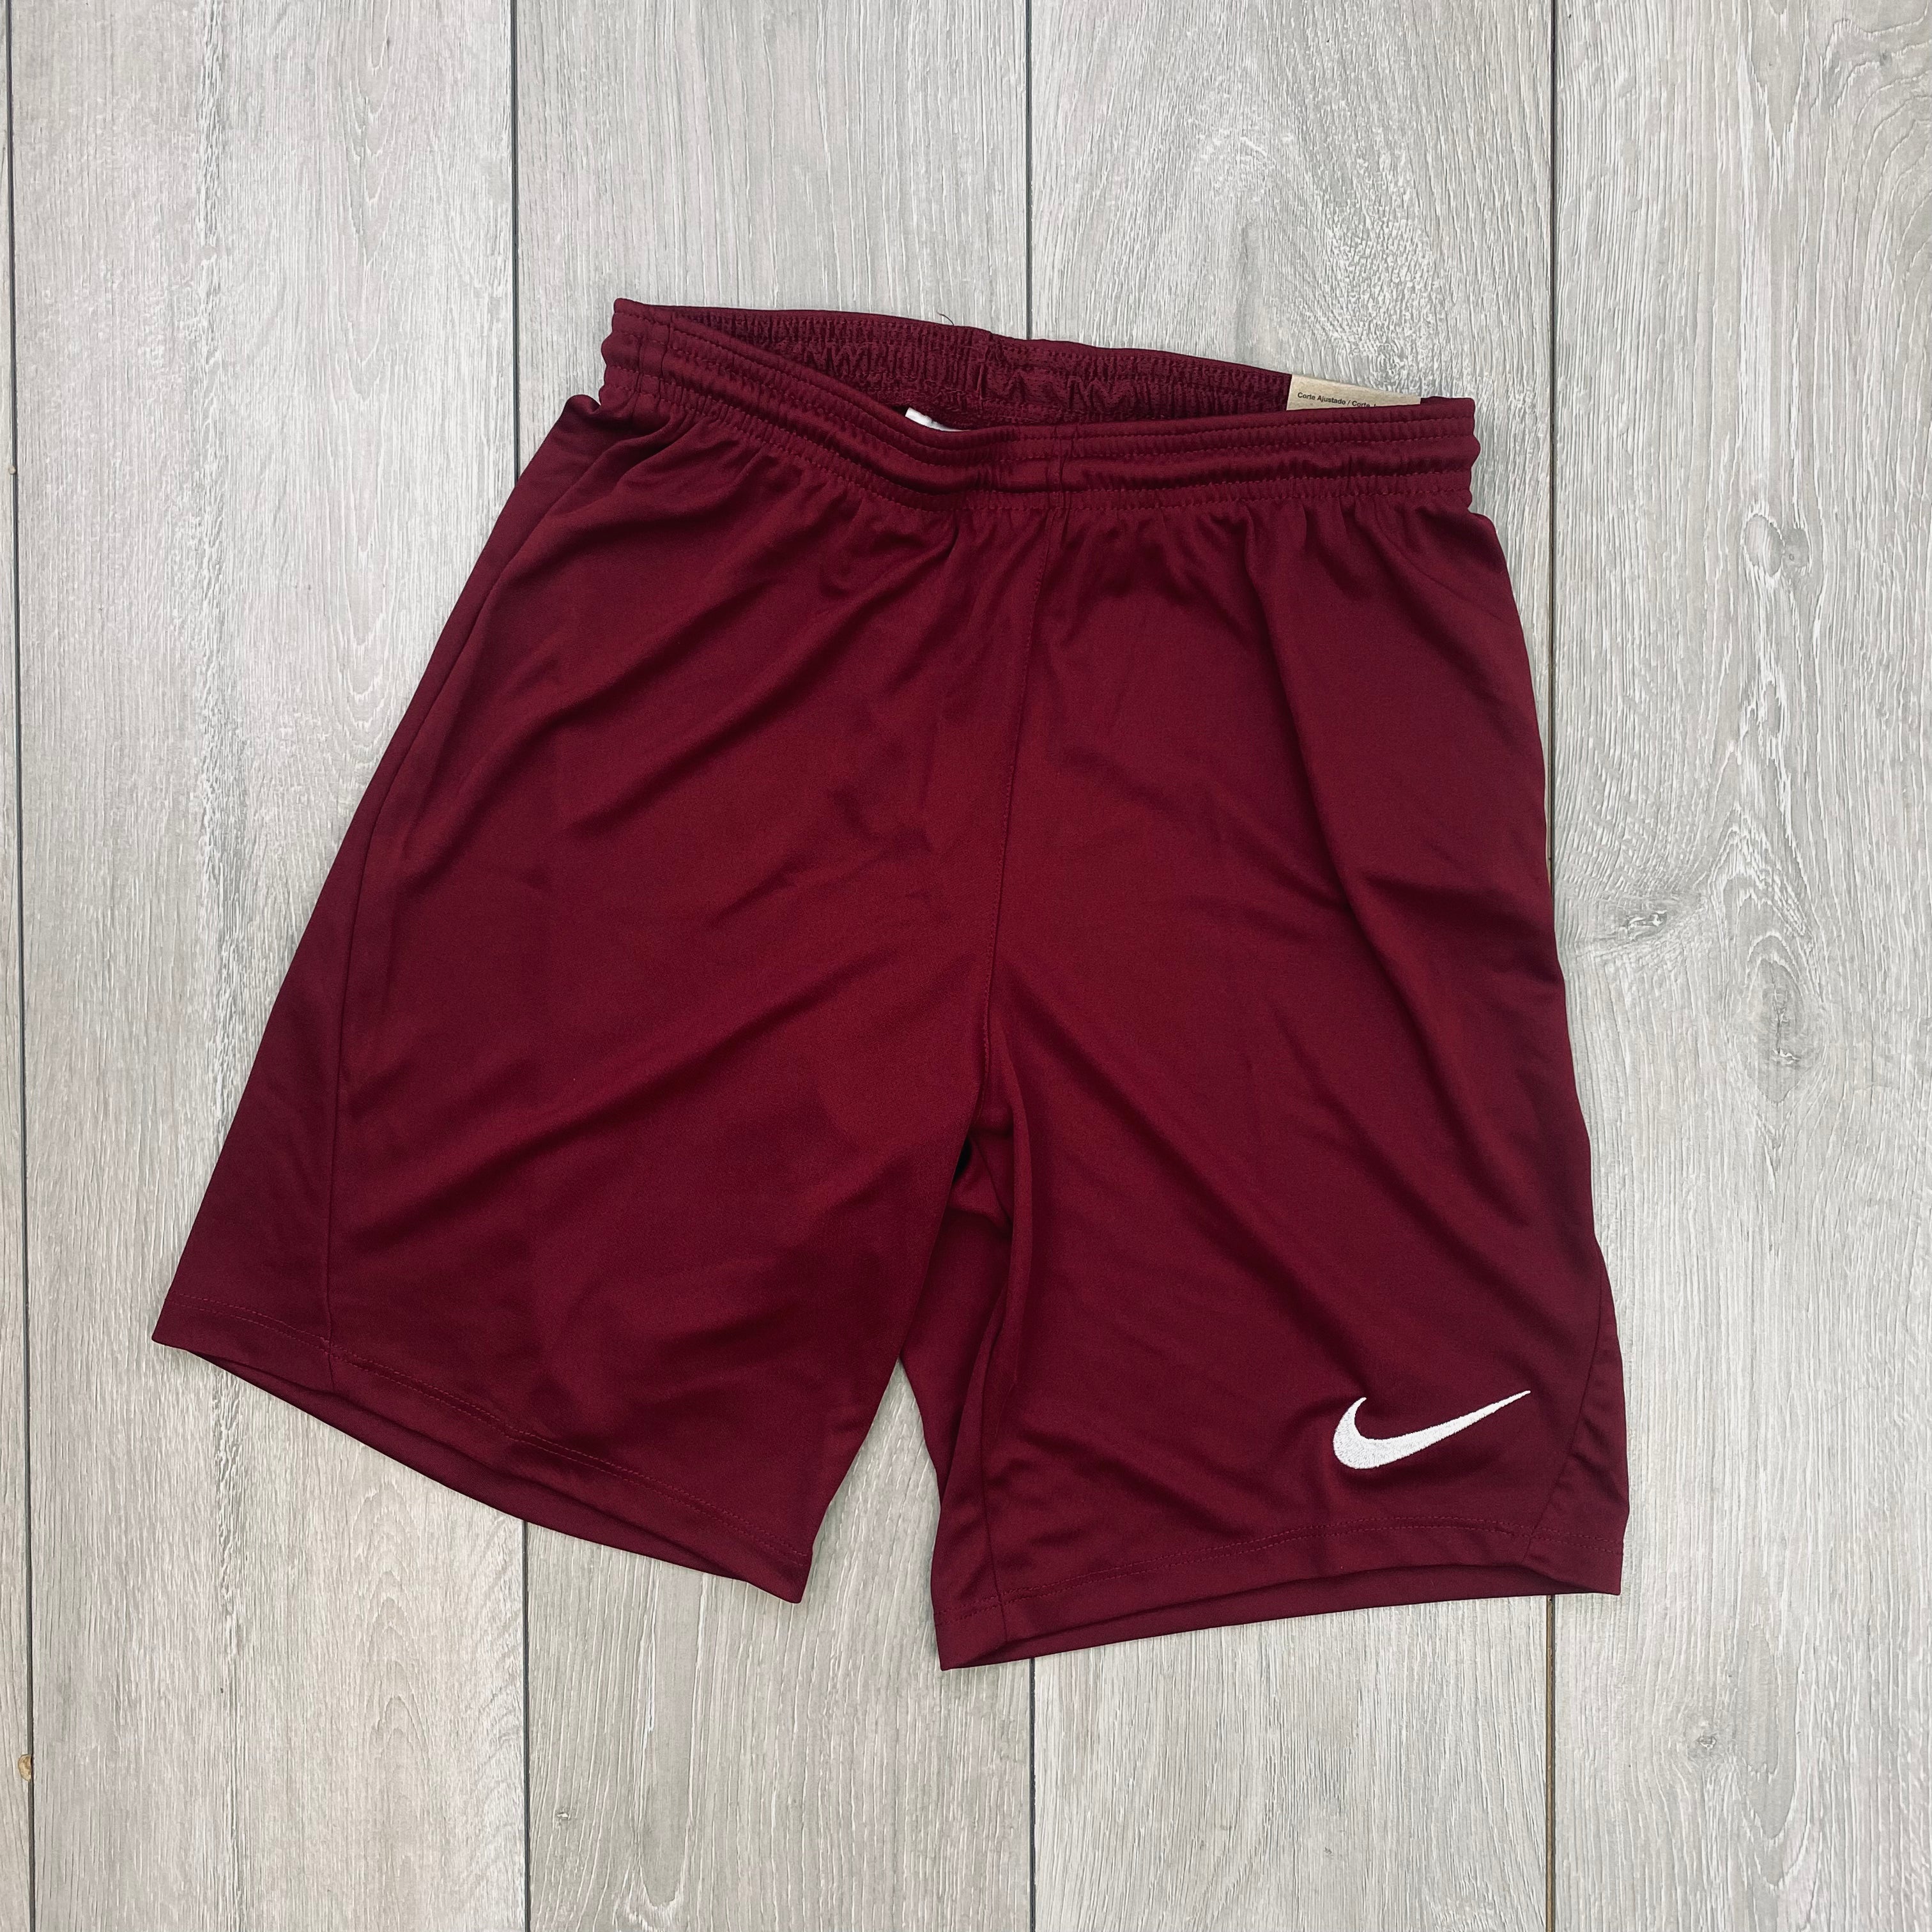 Nike Dri-Fit Shorts - Maroon